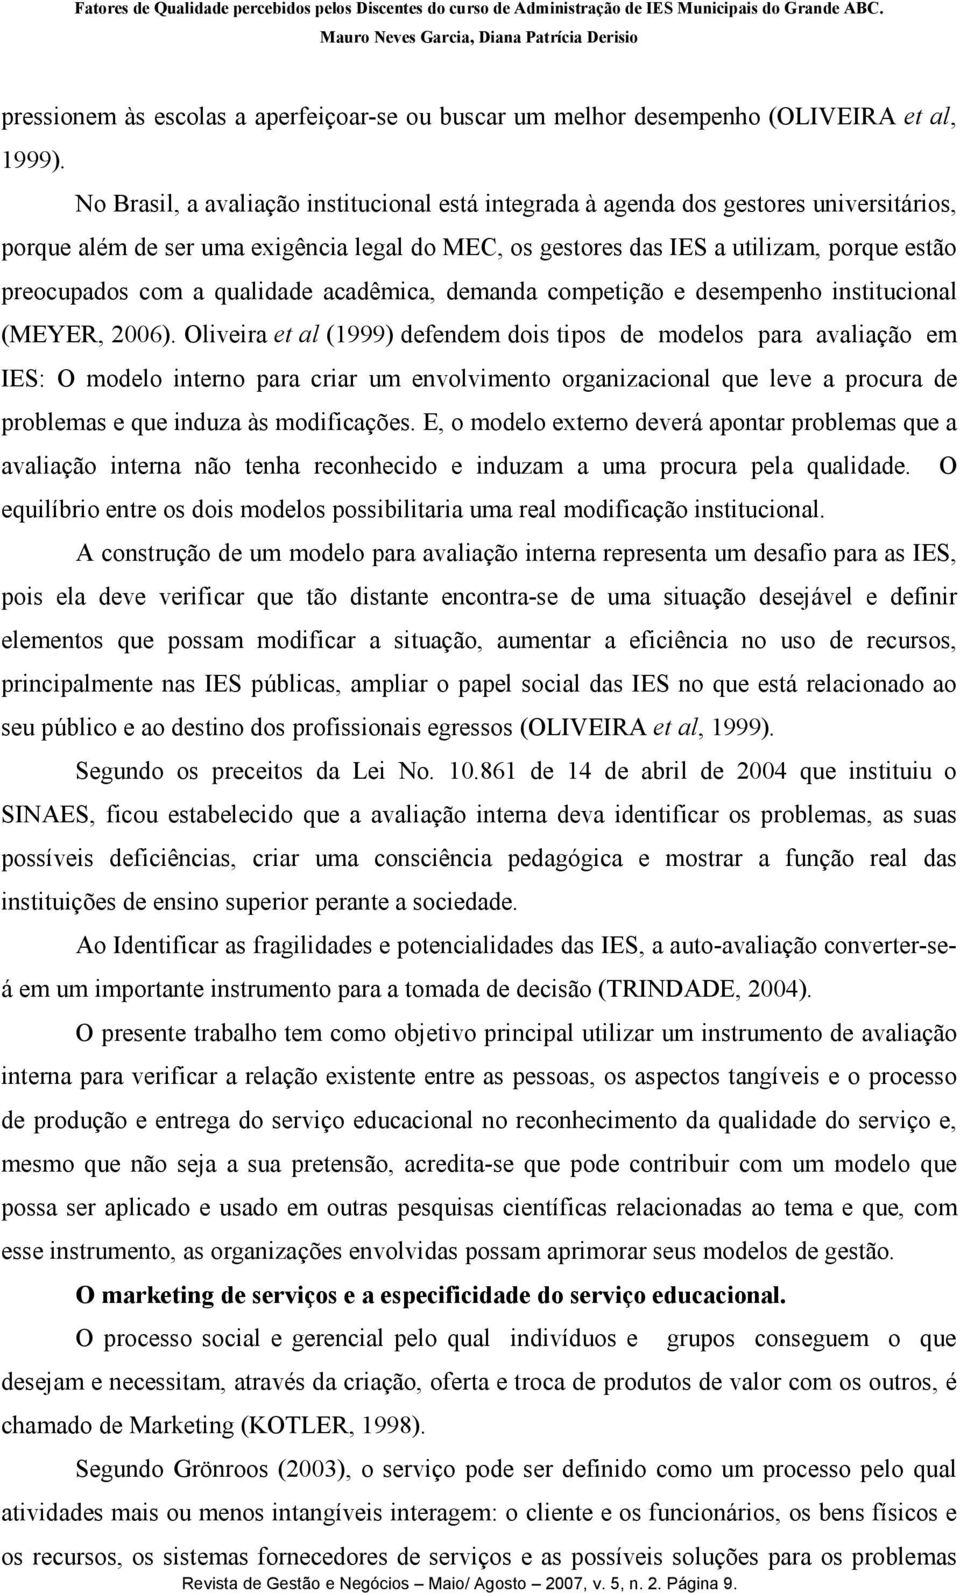 qualidade acadêmica, demanda competição e desempenho institucional (MEYER, 2006).